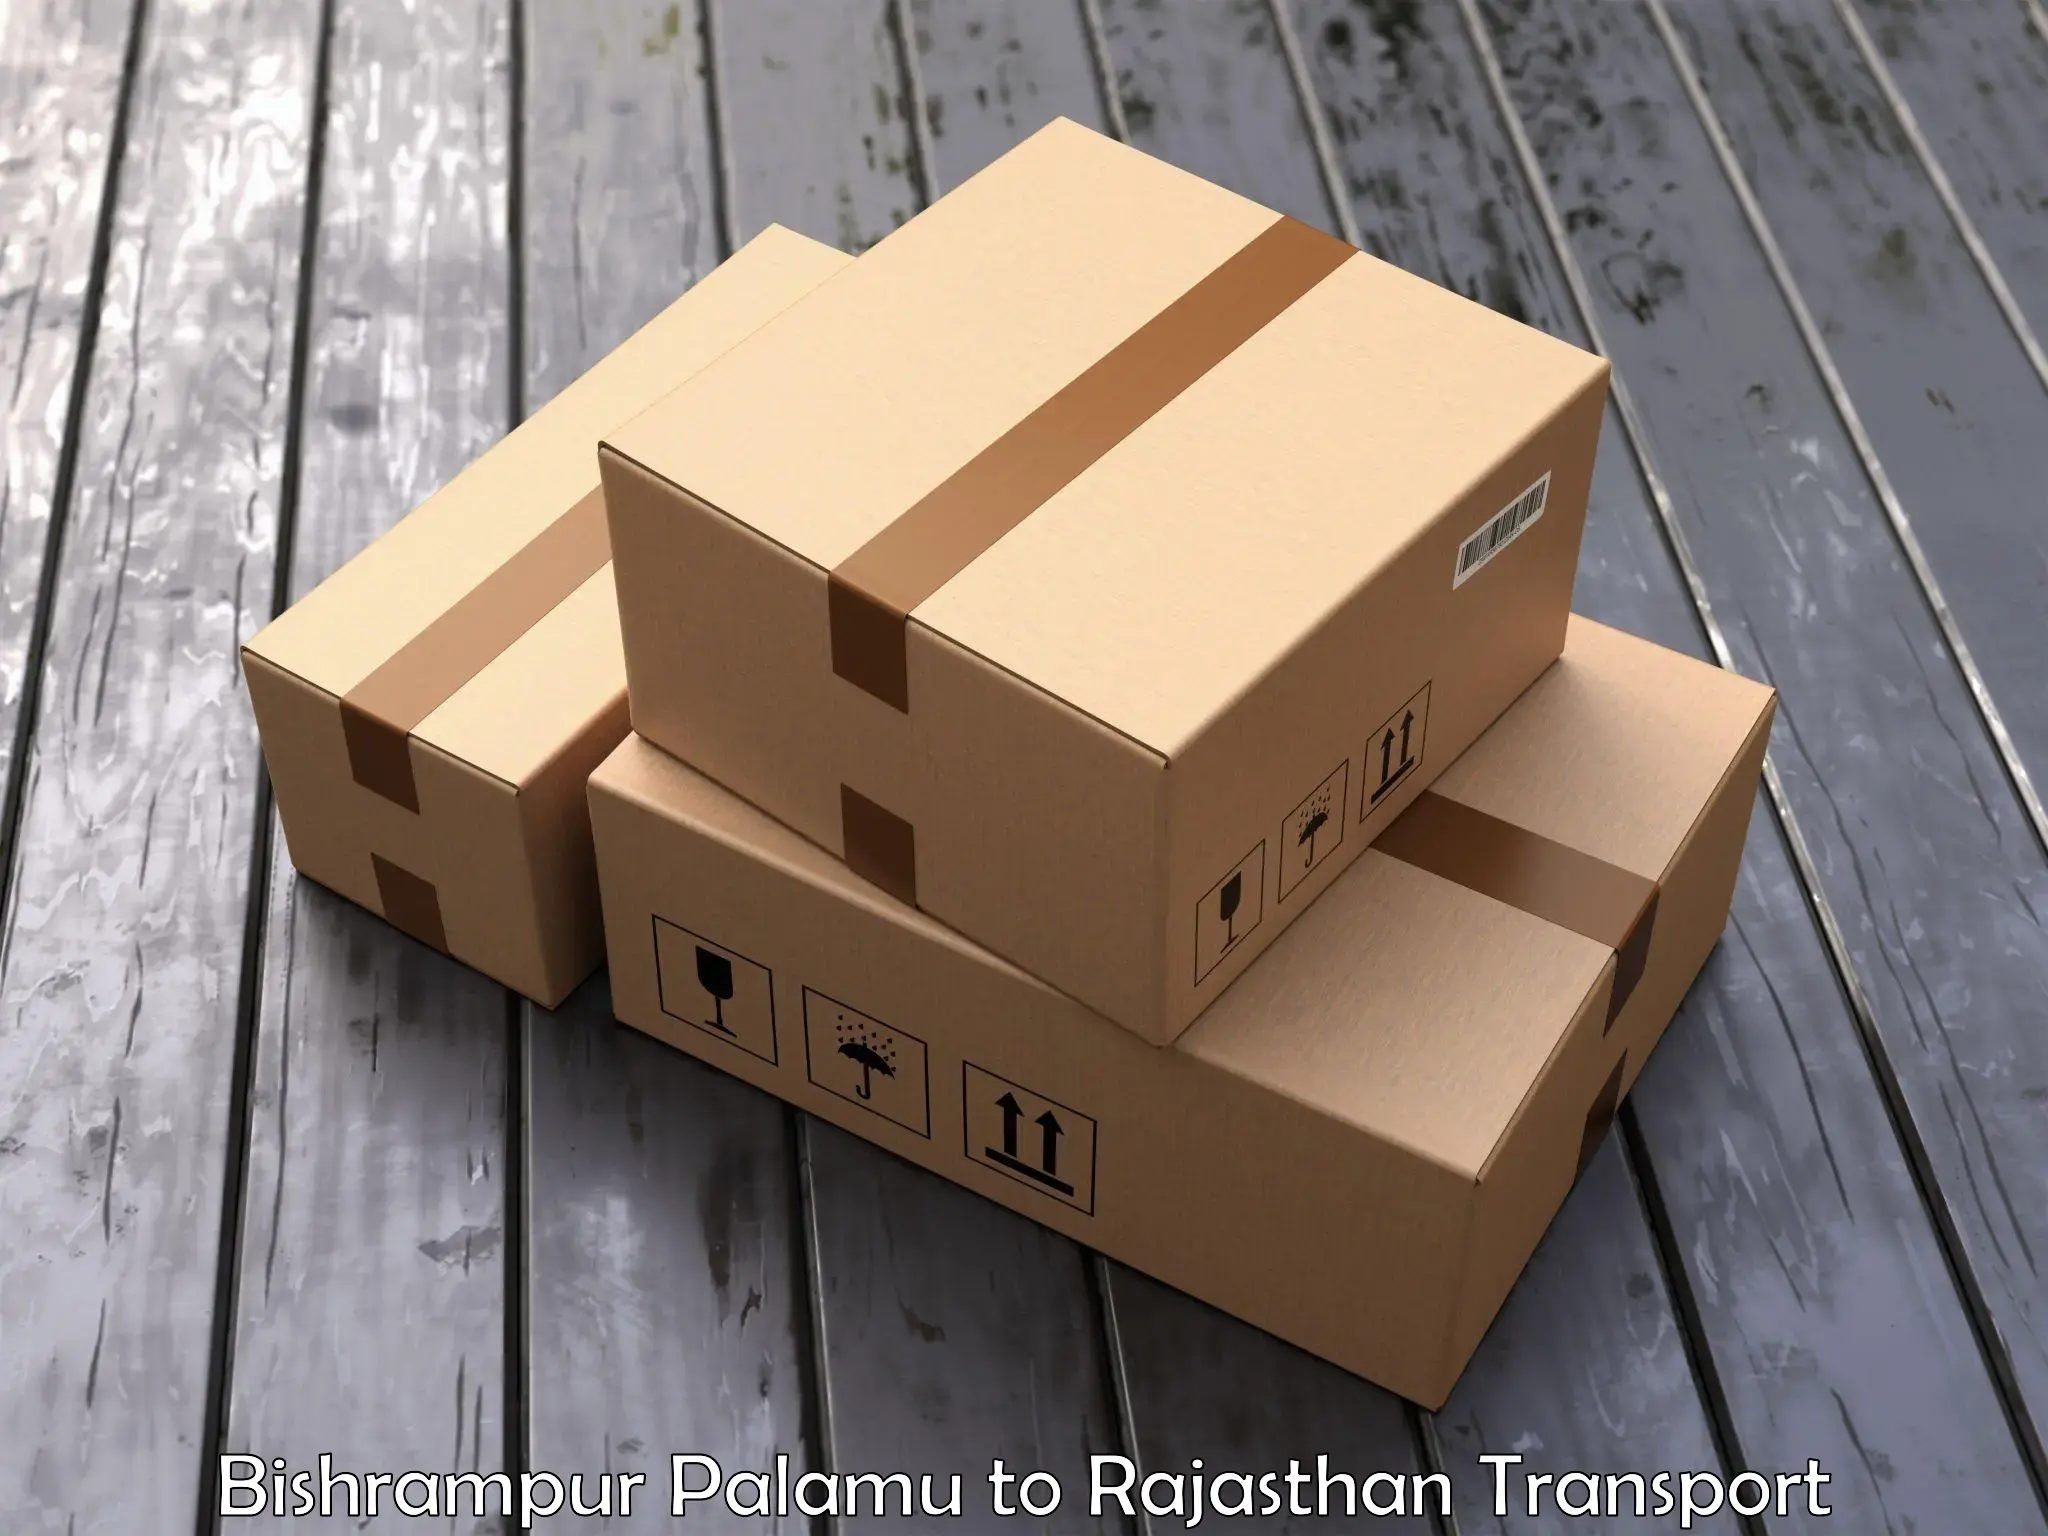 International cargo transportation services Bishrampur Palamu to Rajasthan